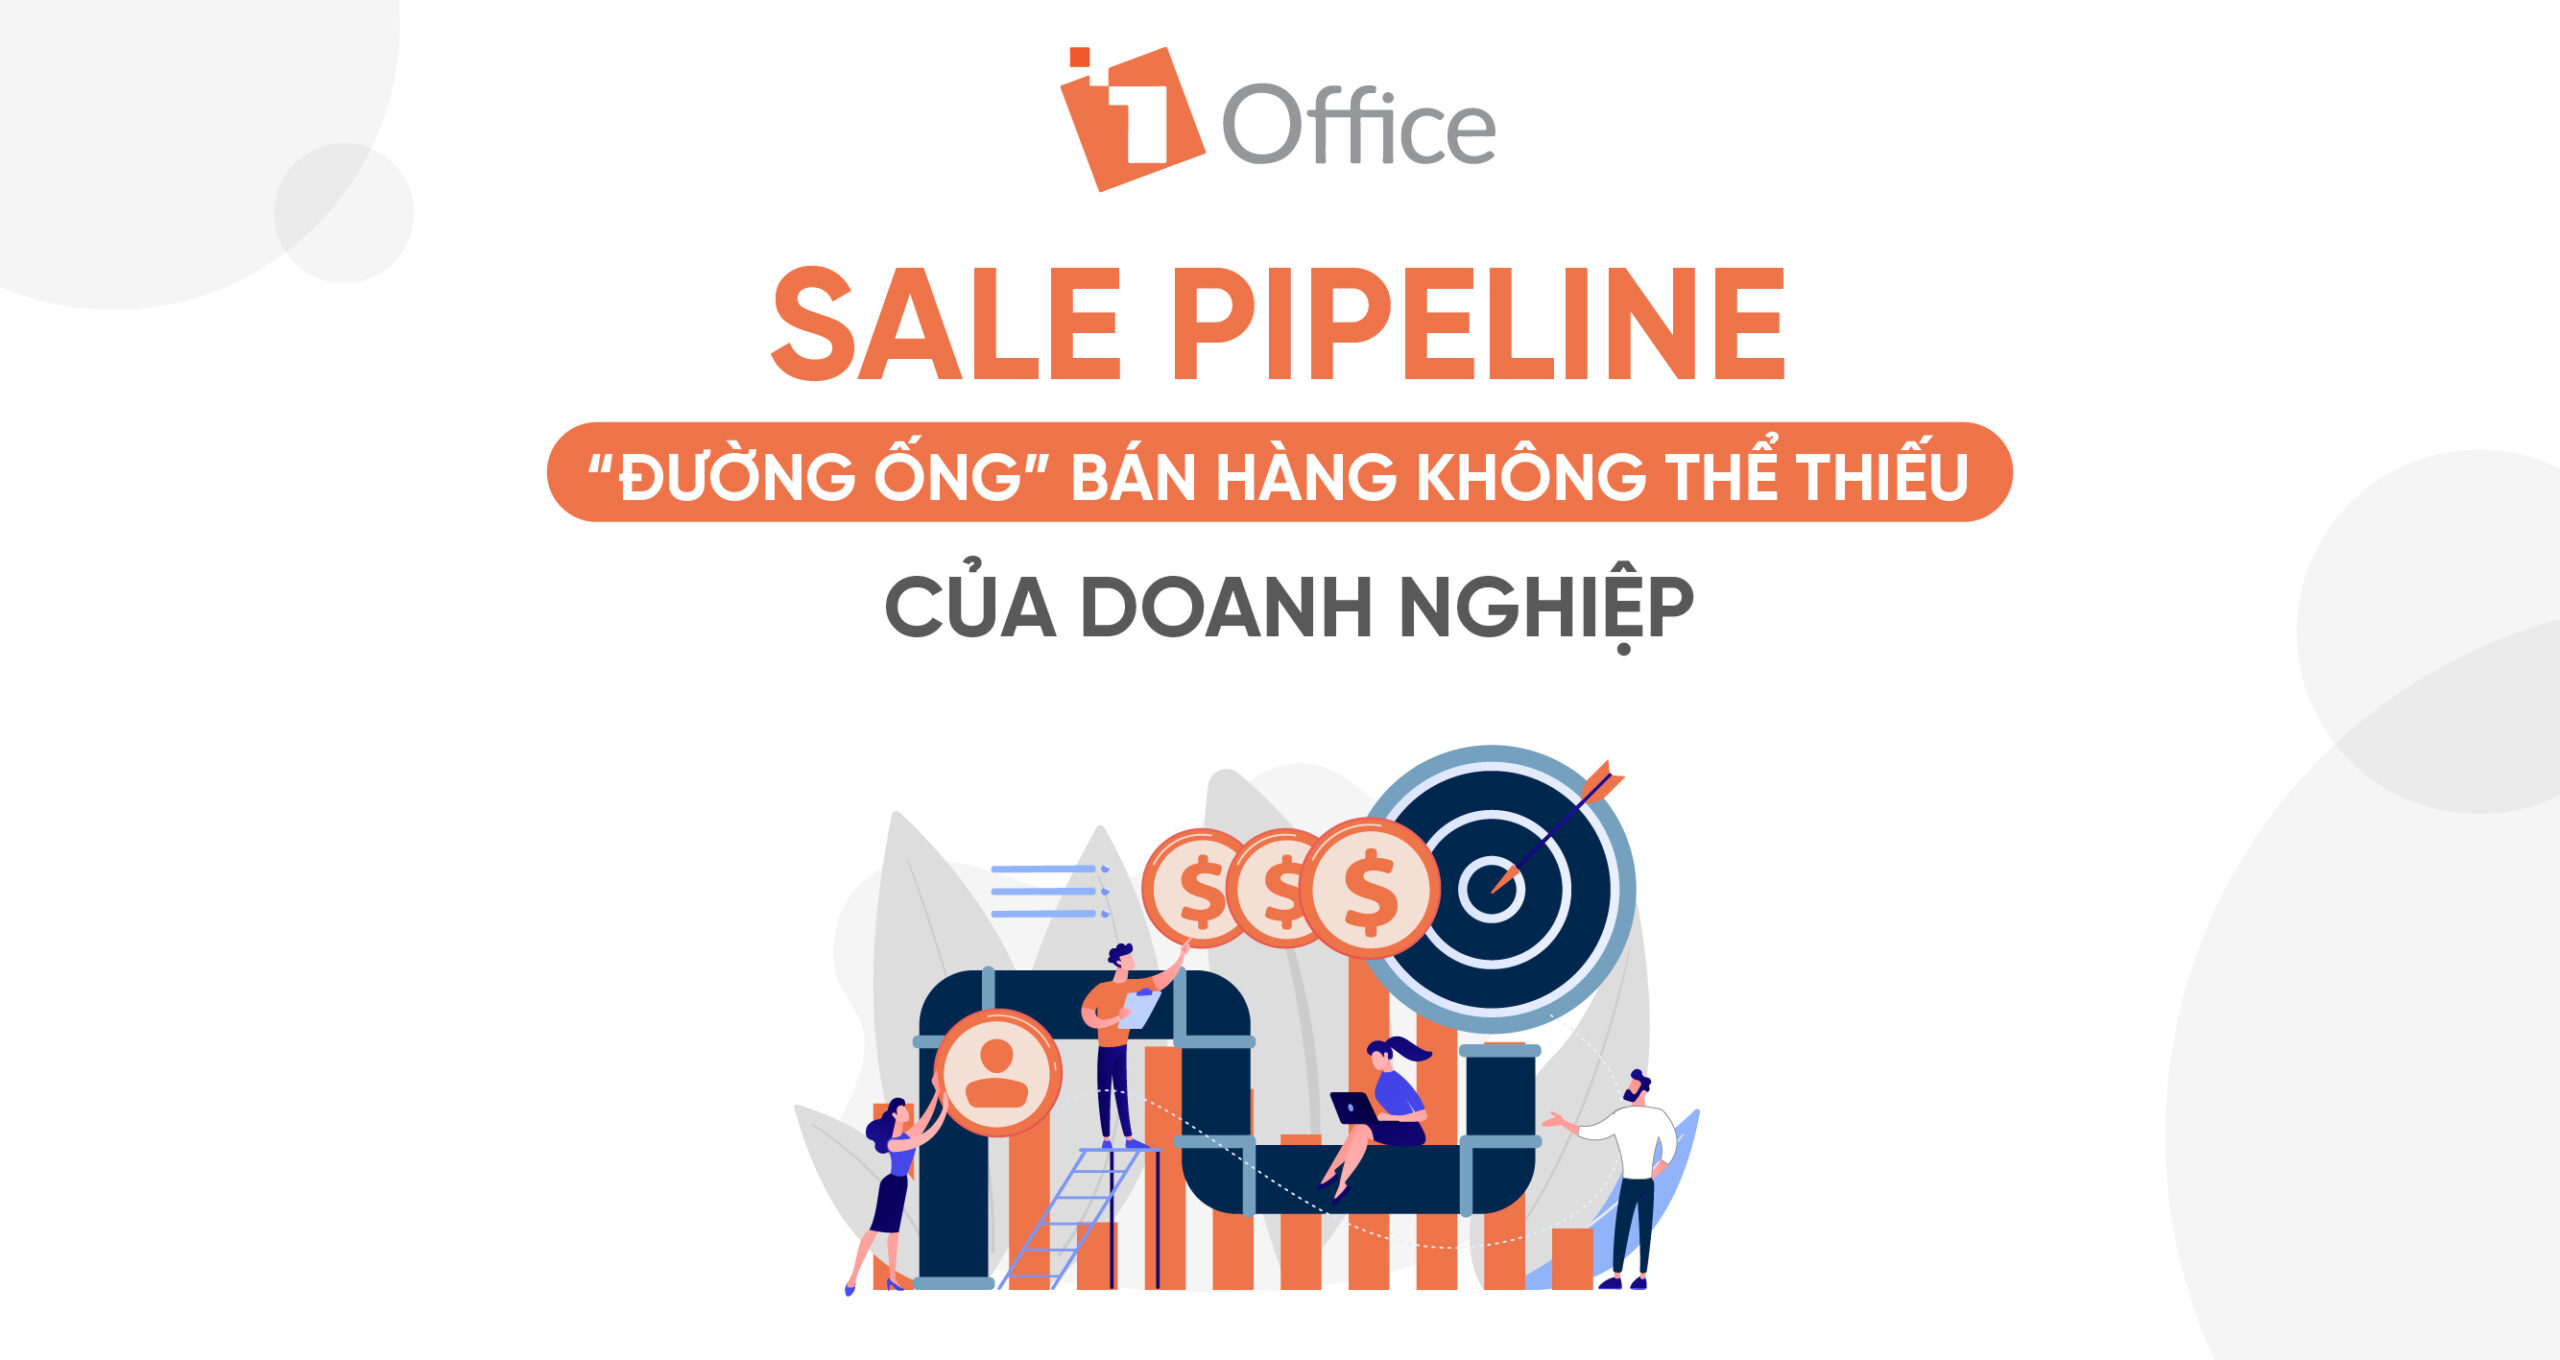 Sale Pipeline - Đường ống bán hàng không thể thiếu của doanh nghiệp